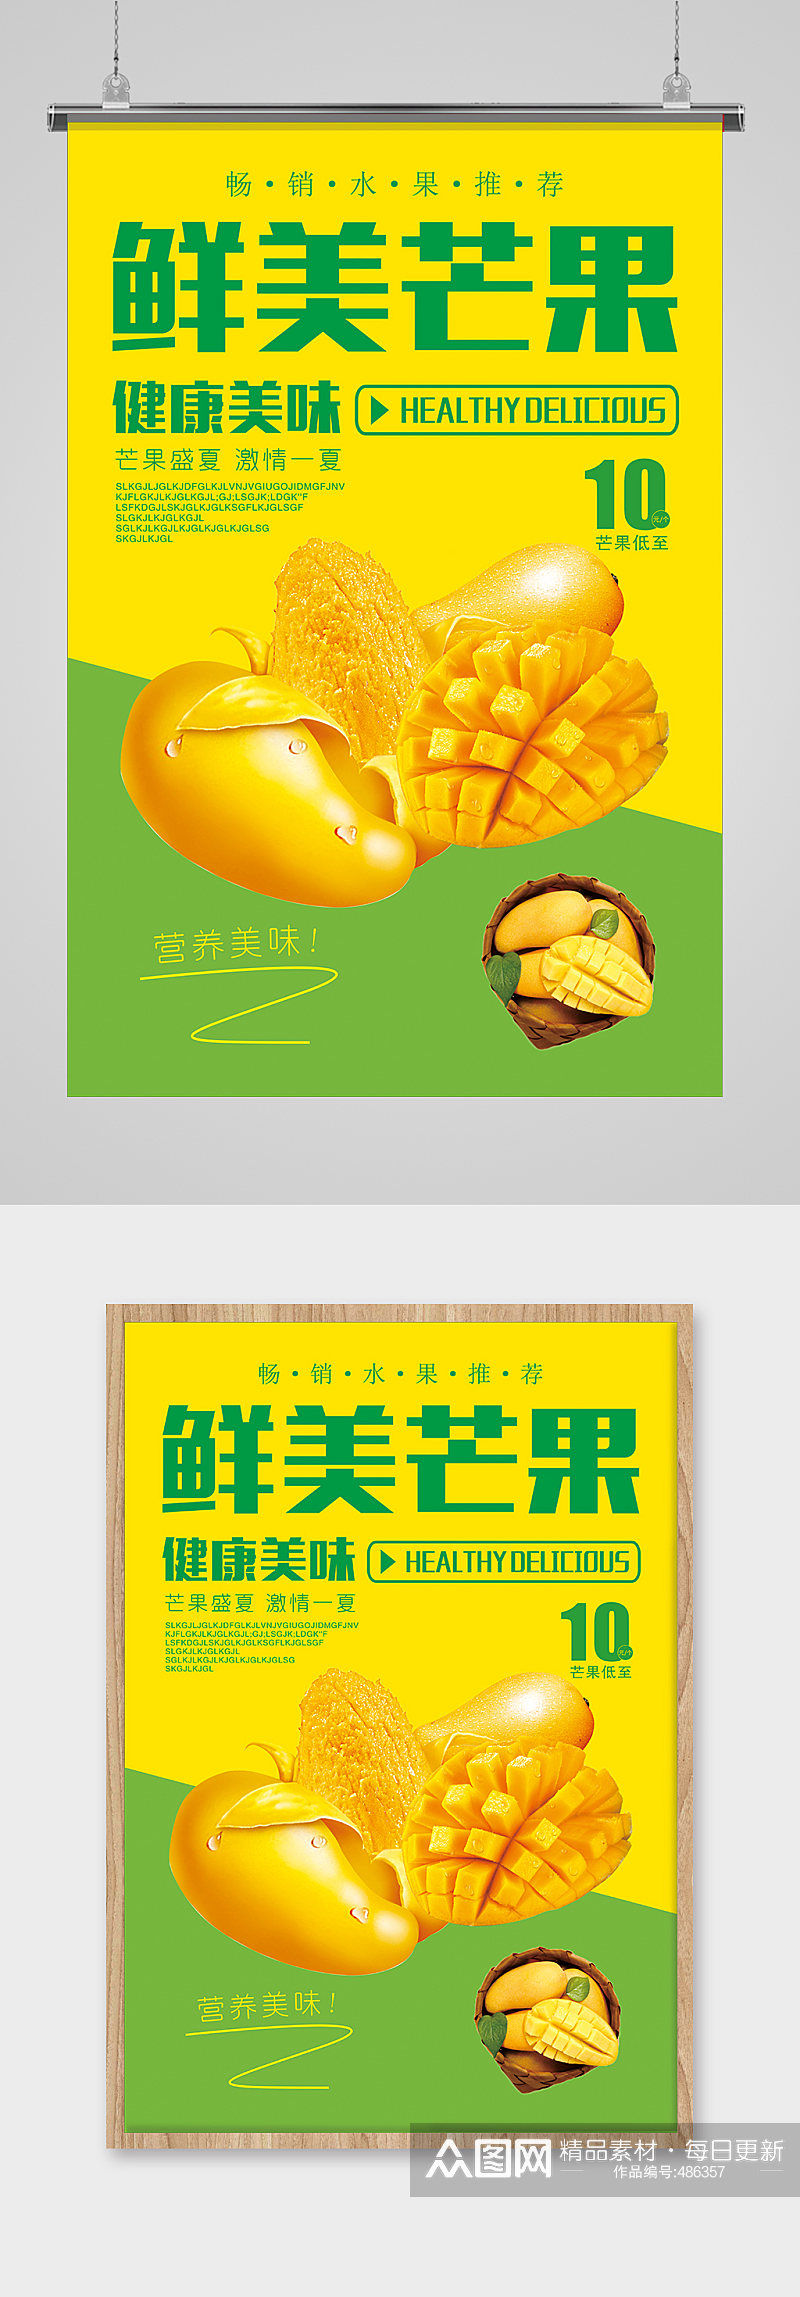 芒果海报芒果广告素材